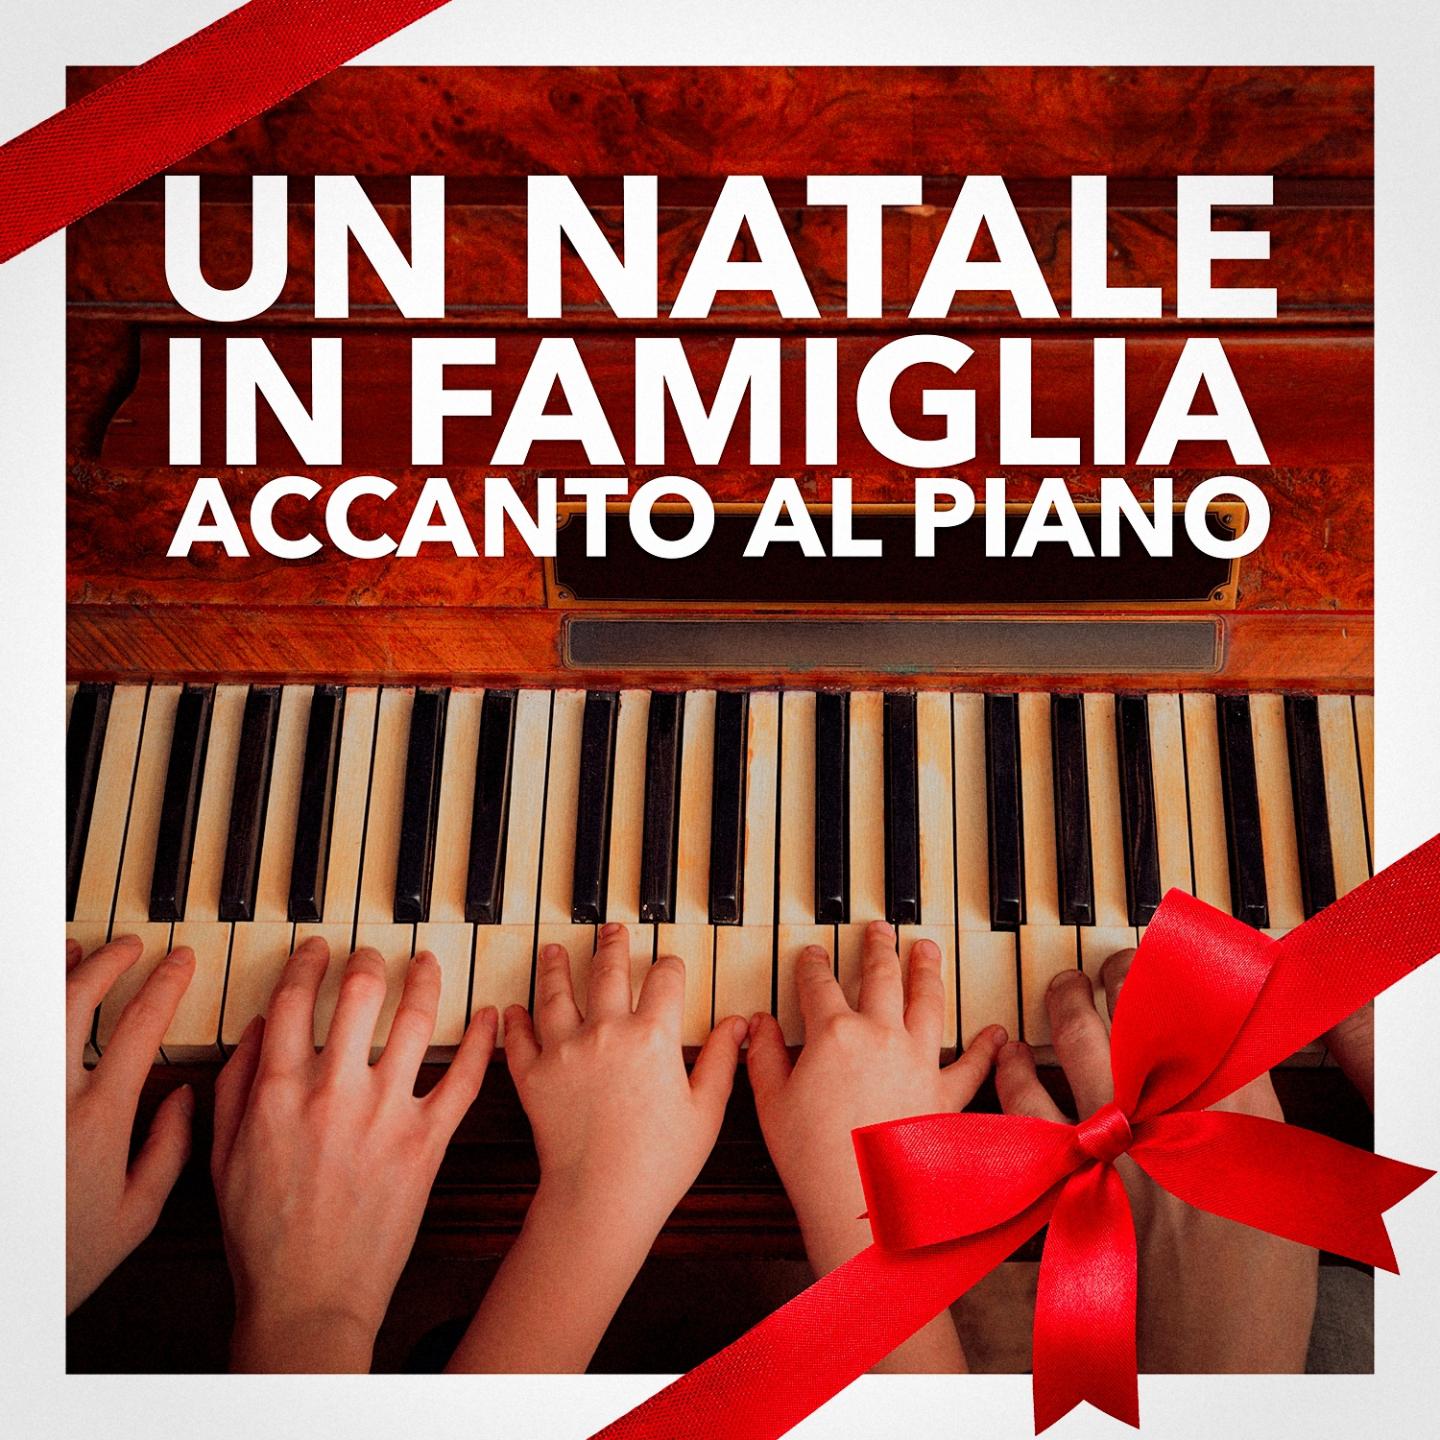 Un Natale in famiglia accanto al pianoforte